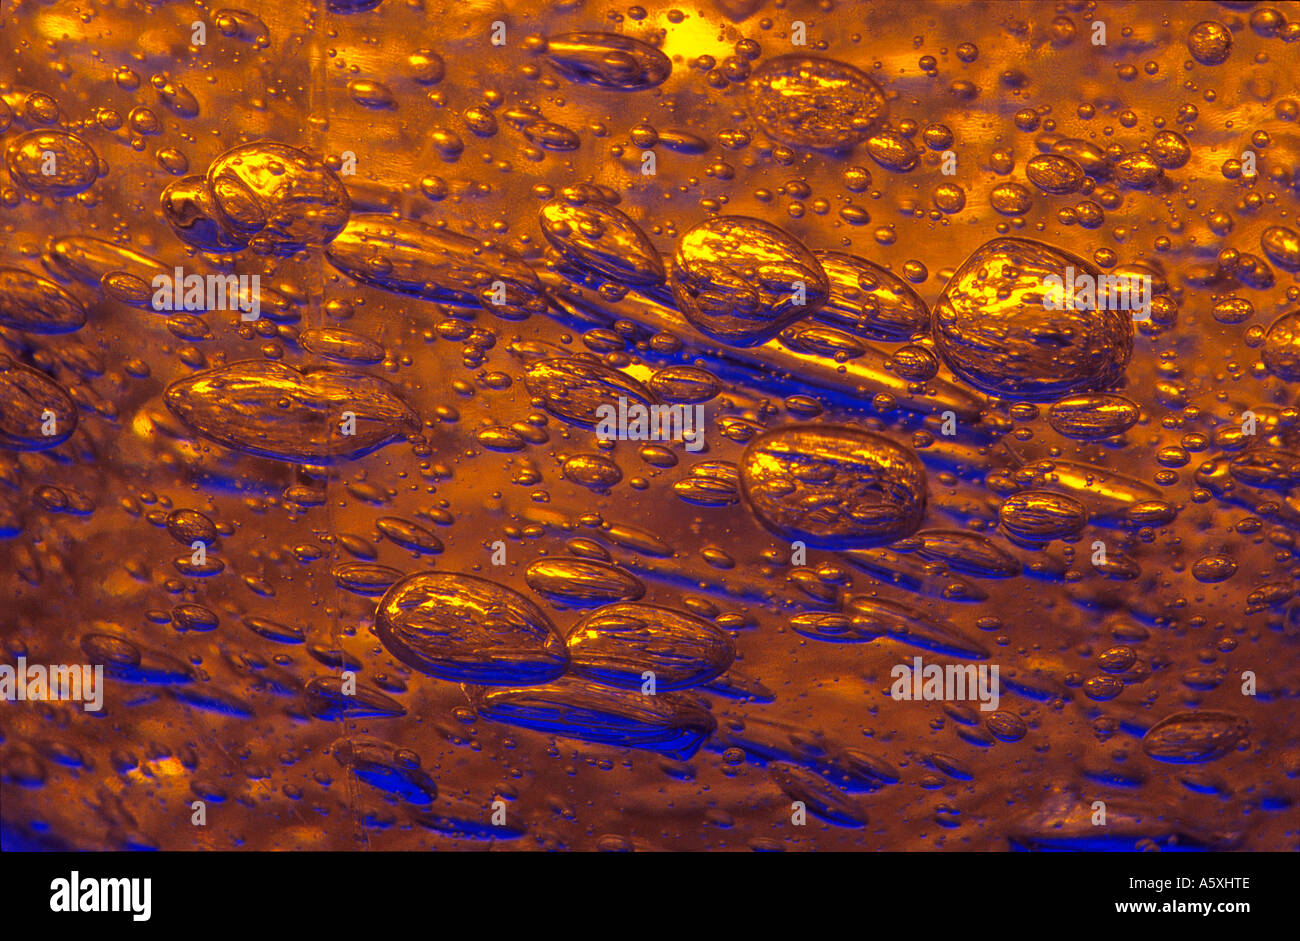 Macrophotography of air bubbles trapped into a gel. Macrophotographie de bulles d'air prises dans un gel. Stock Photo